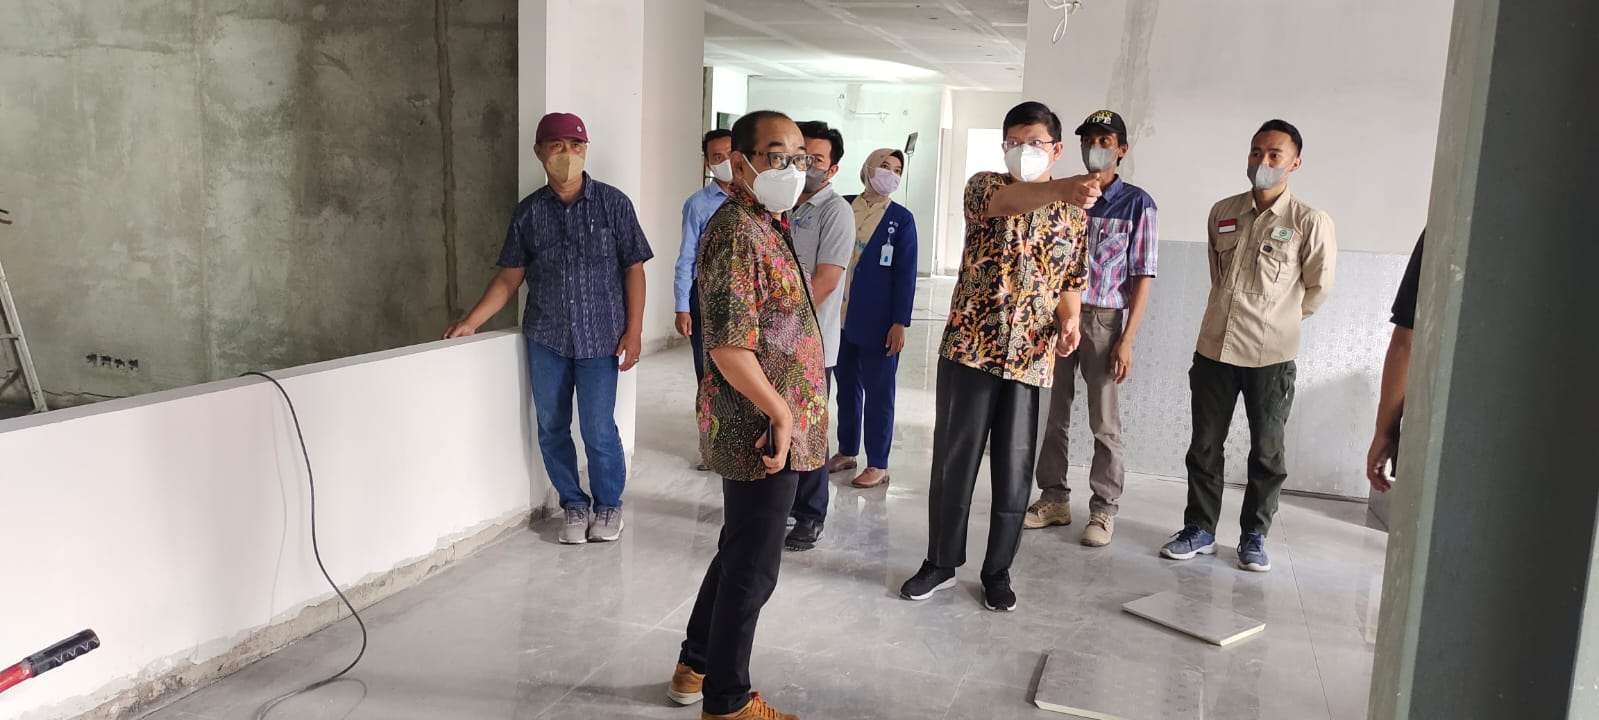 Ketua Perhimpunan Perawat Penderita Penyakit Mata Undaan Surabaya (P4MU), Arif Afandi sedang melihat pembangunan gedung layanan baru dikebut agar bisa diresmikan bulan Mei 2022. (Foto: Dok. Arif Afandi)